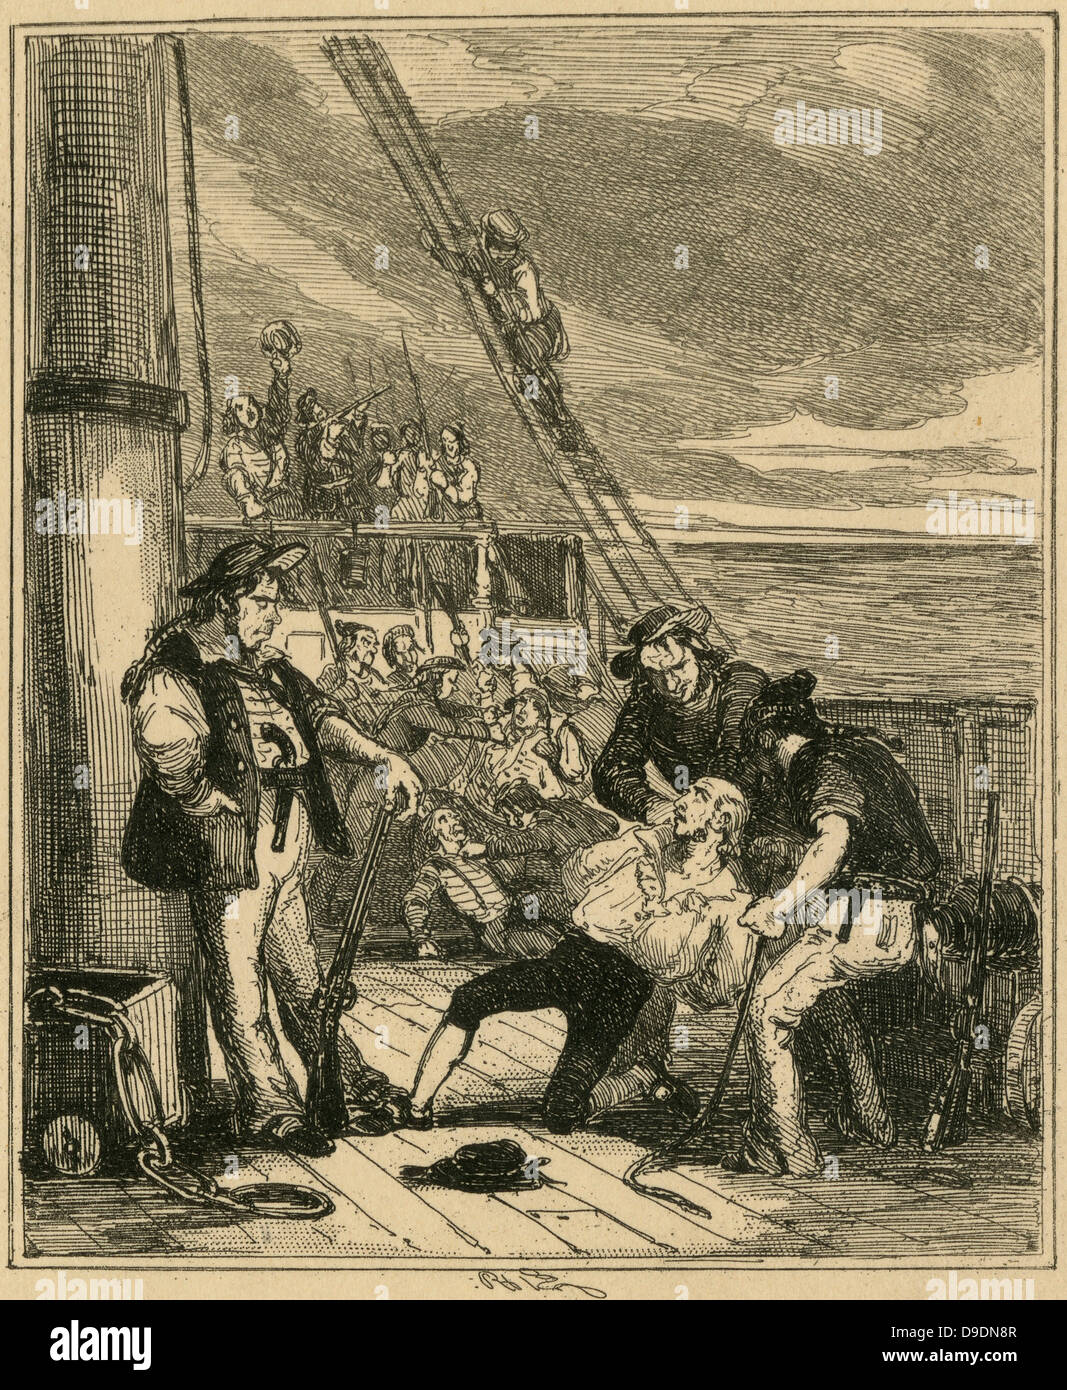 El motín del HMS "Bounty", mayo de 1790. El Capitán Bligh a la merced de los amotinados. Ilustración por 'Phiz' (1815-1882). Foto de stock